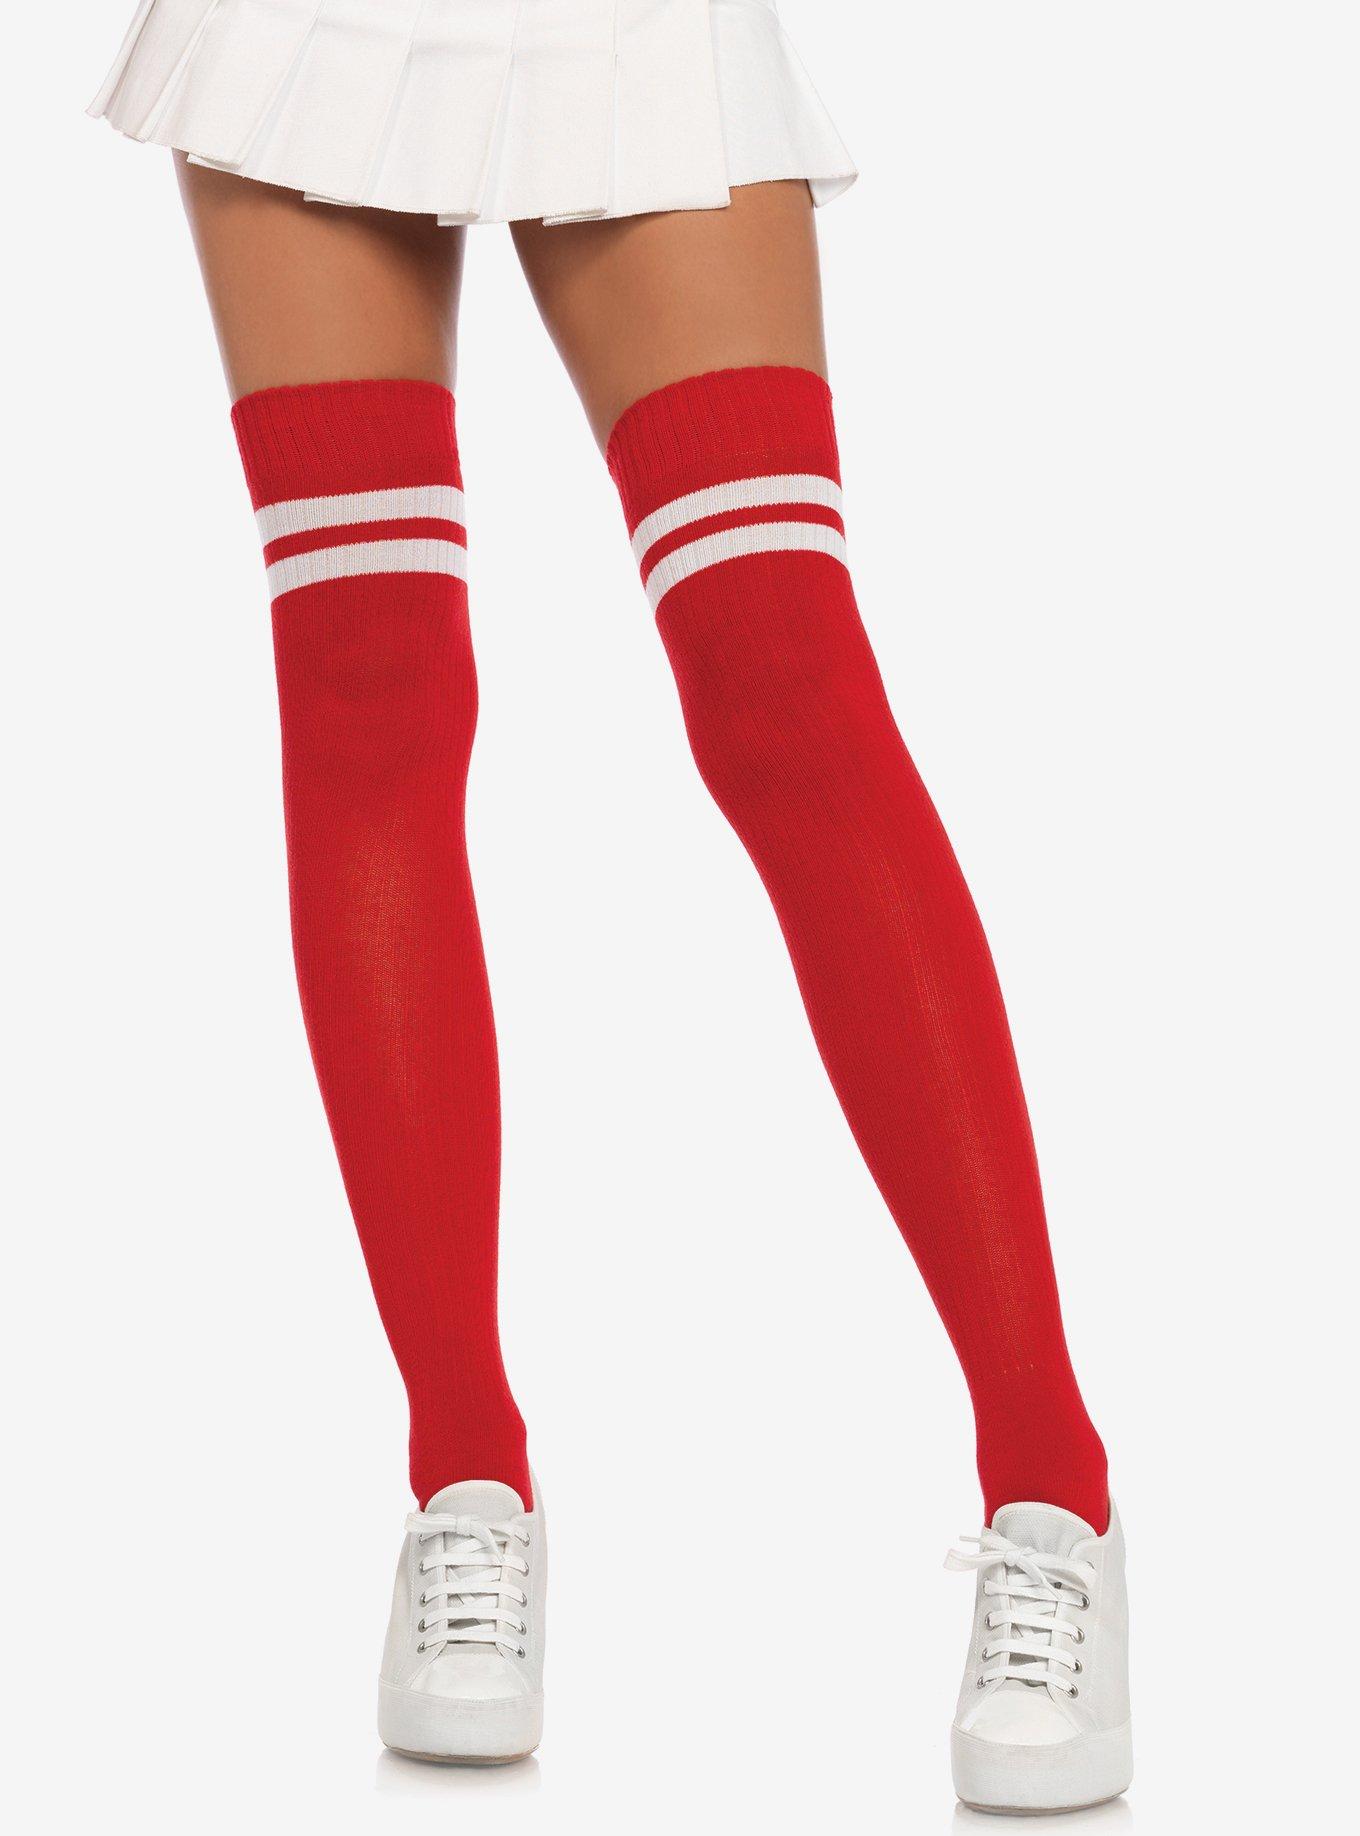 ufuldstændig Sentimental Ekstremt vigtigt Red & White Stripe Ribbed Athletic Thigh High Socks | Hot Topic